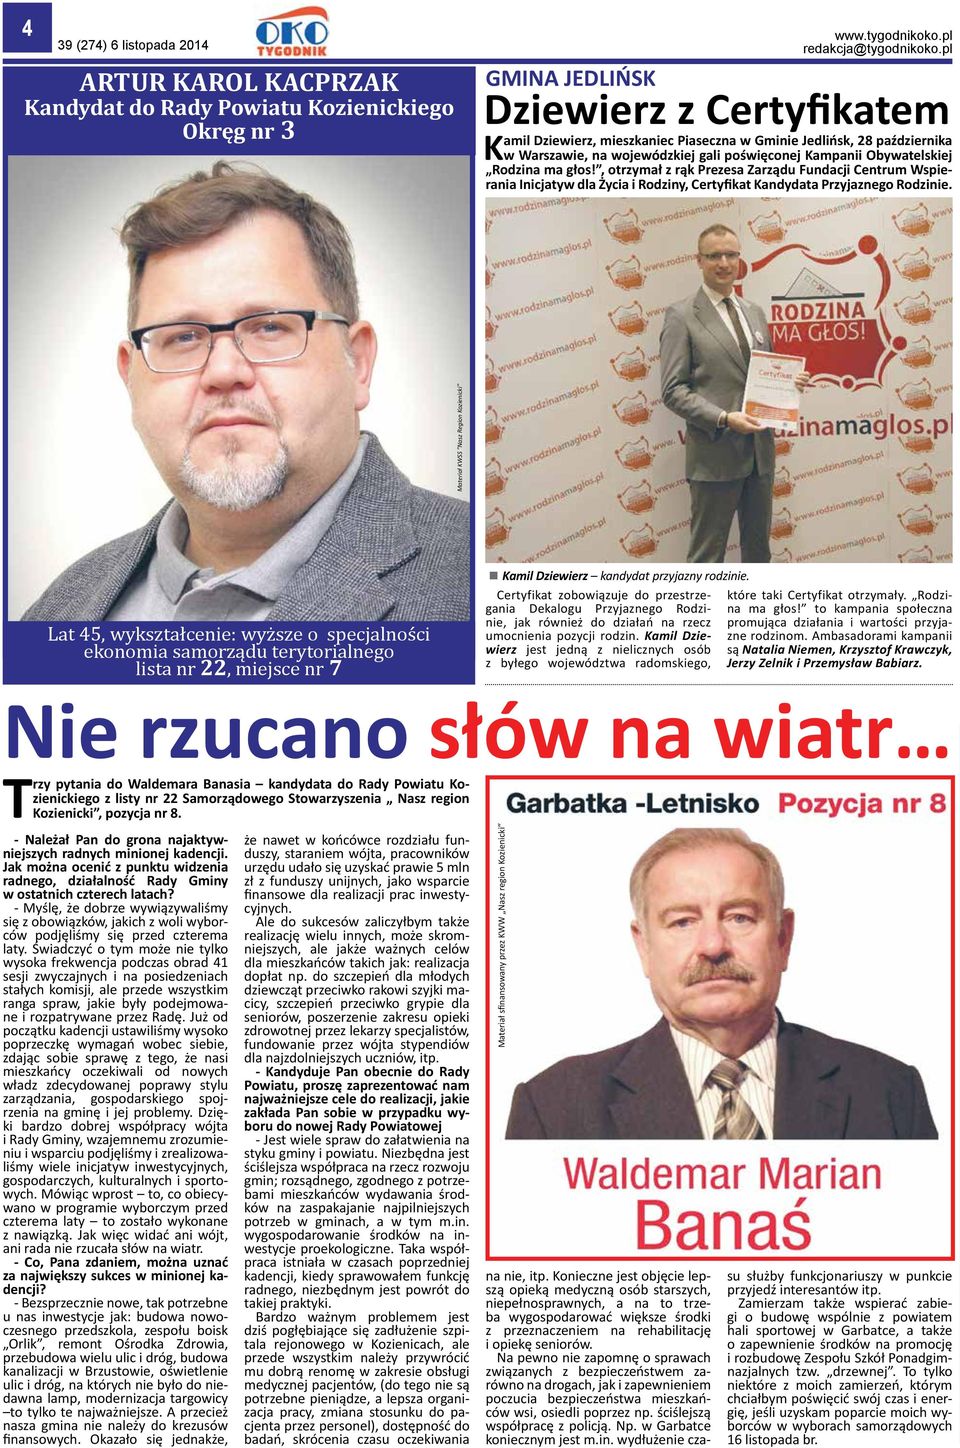 Warszawie, na wojewódzkiej gali poświęconej Kampanii Obywatelskiej Rodzina ma głos!